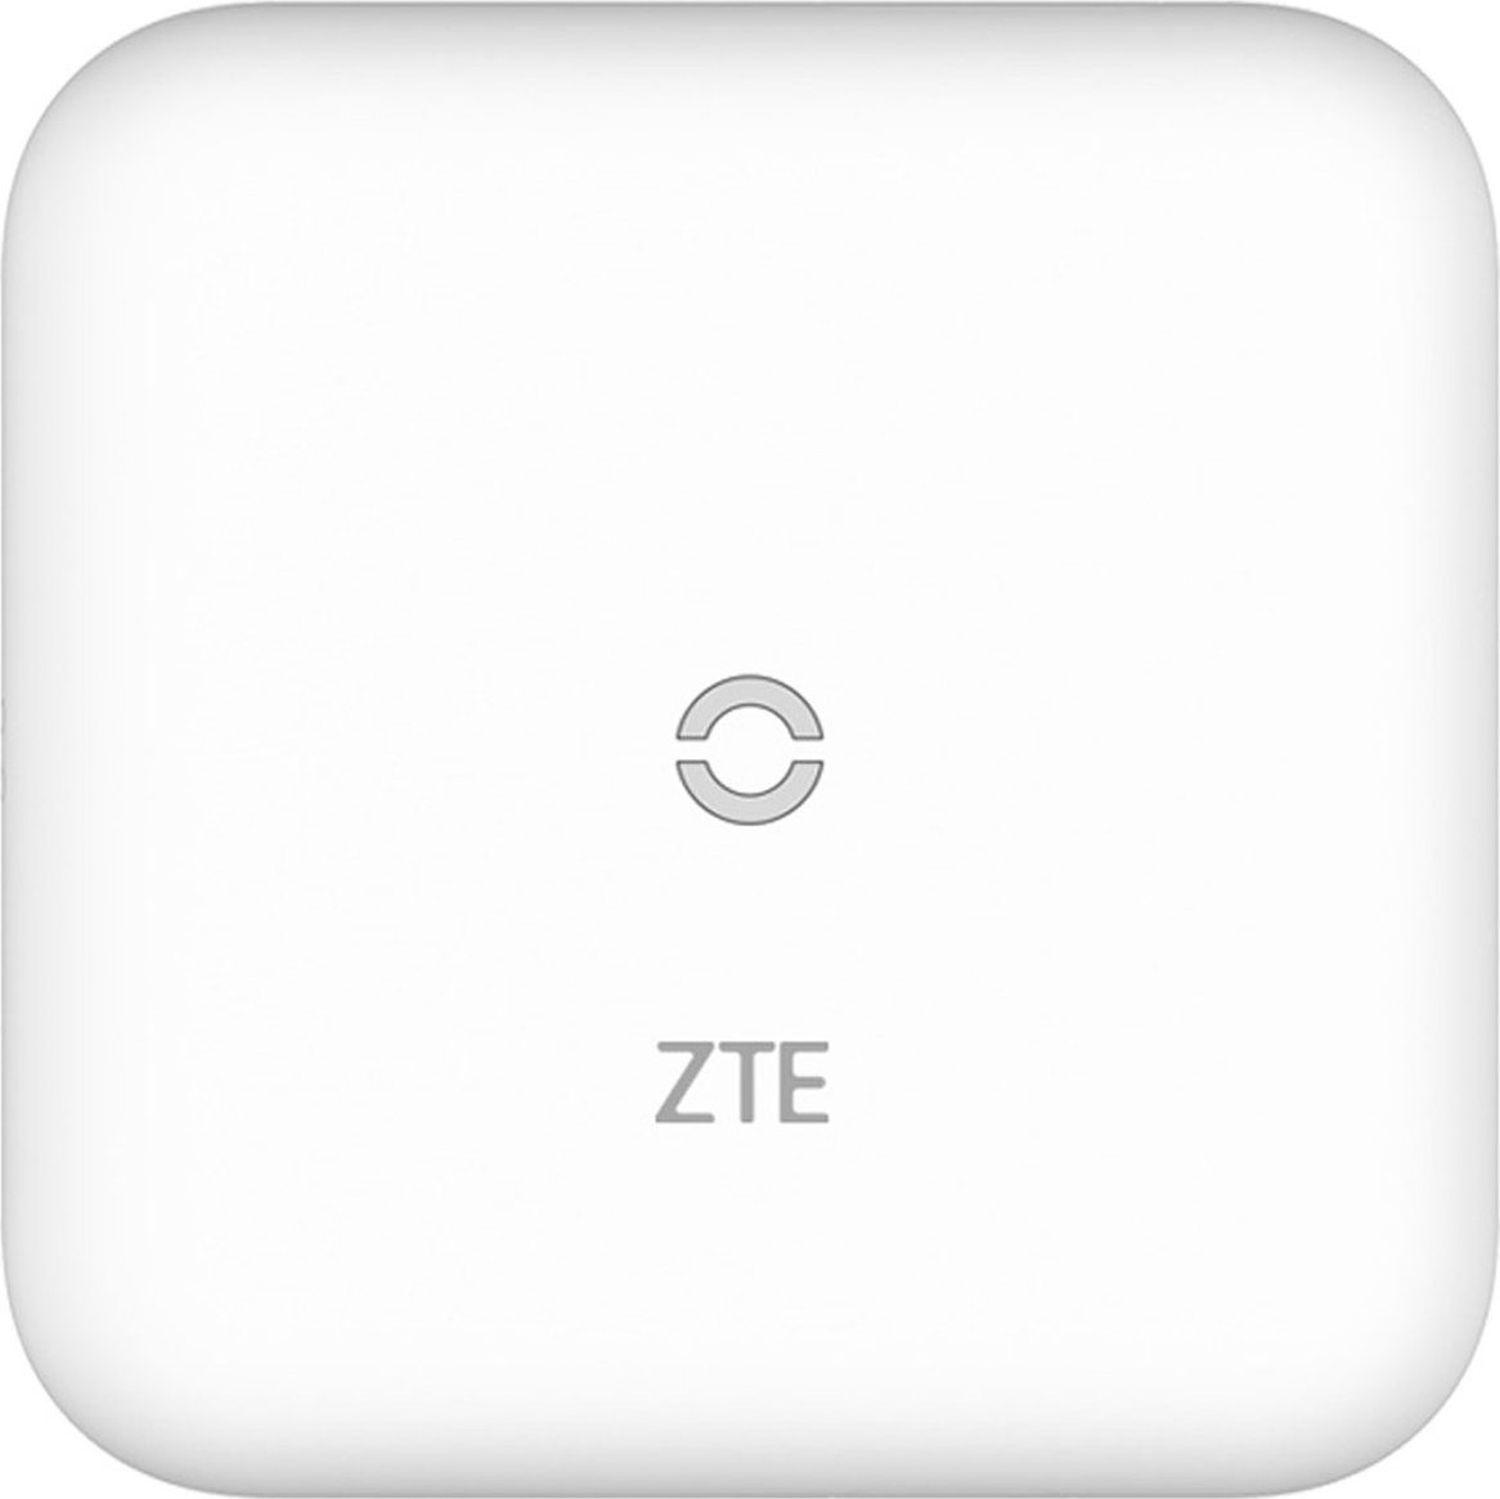 ZTE MF17T WLAN Router White